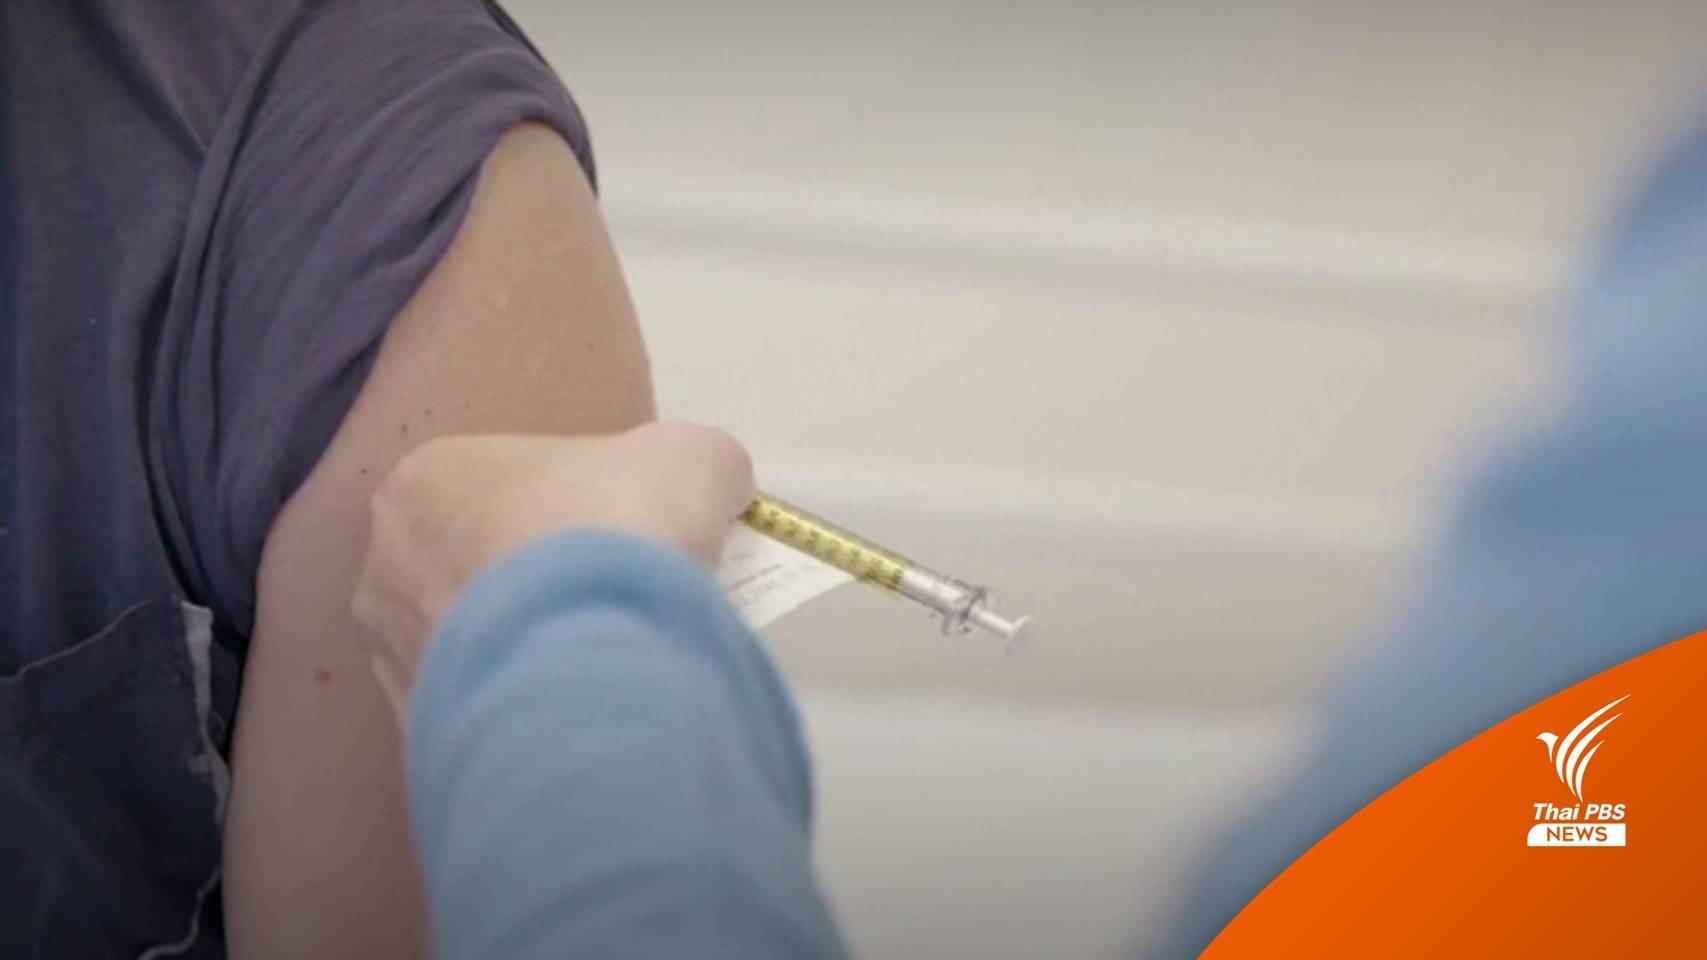 สหรัฐฯ เร่งศึกษาความเสี่ยงจากวัคซีนโควิด 2 สายพันธุ์